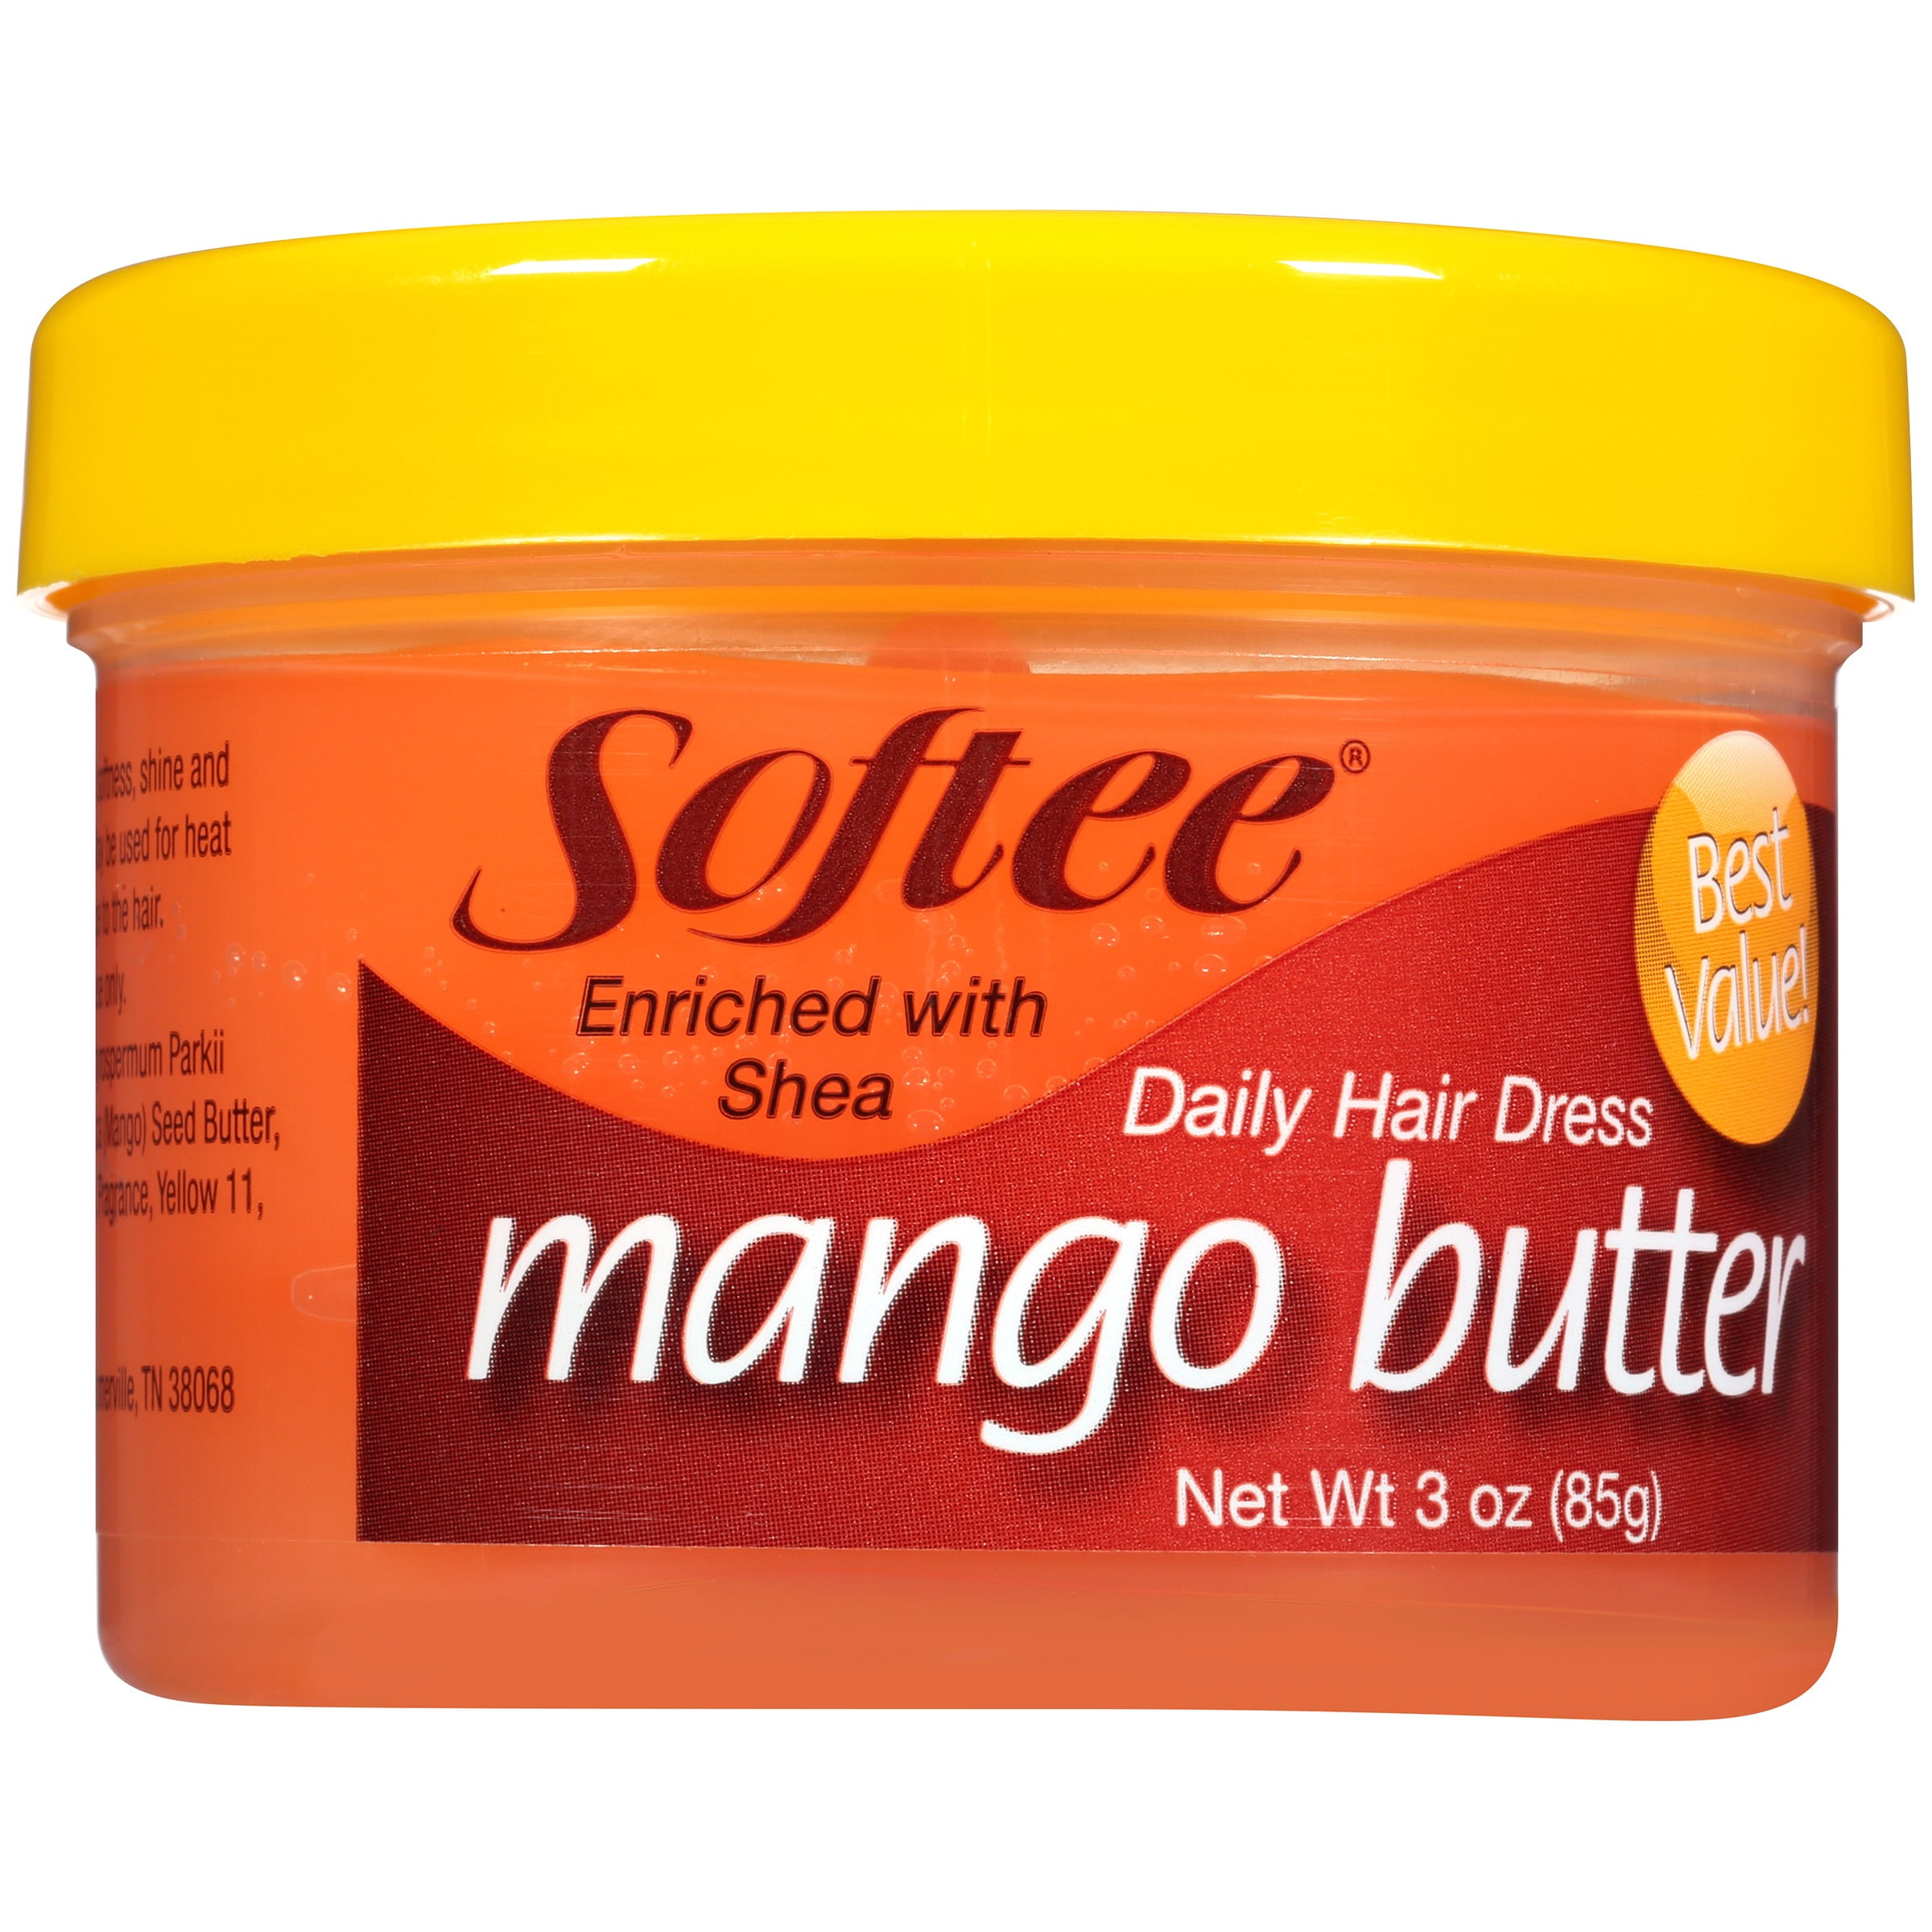 Softee Mango Butter Daily Hair Dress, 3 oz 